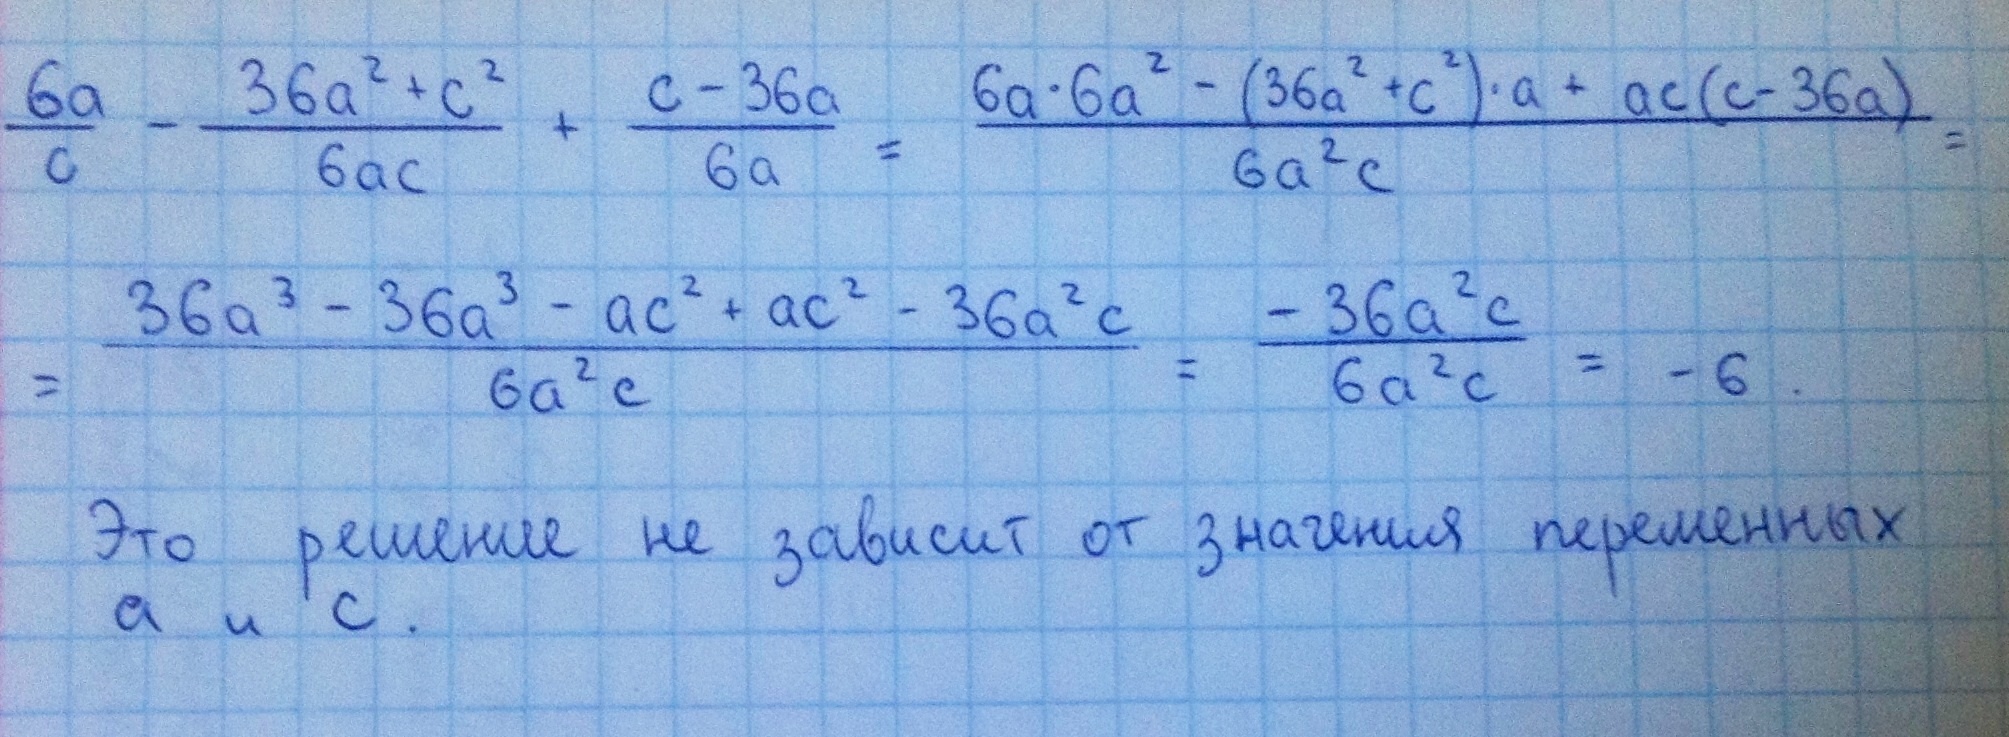 C2 ac a2 c a a. 7a/6c-49a 2+36c. 6a/c-36a2+c2/6ac+c-36a/6a. 42/7а-а2-6/а при а 2. 36a^2+c^2.